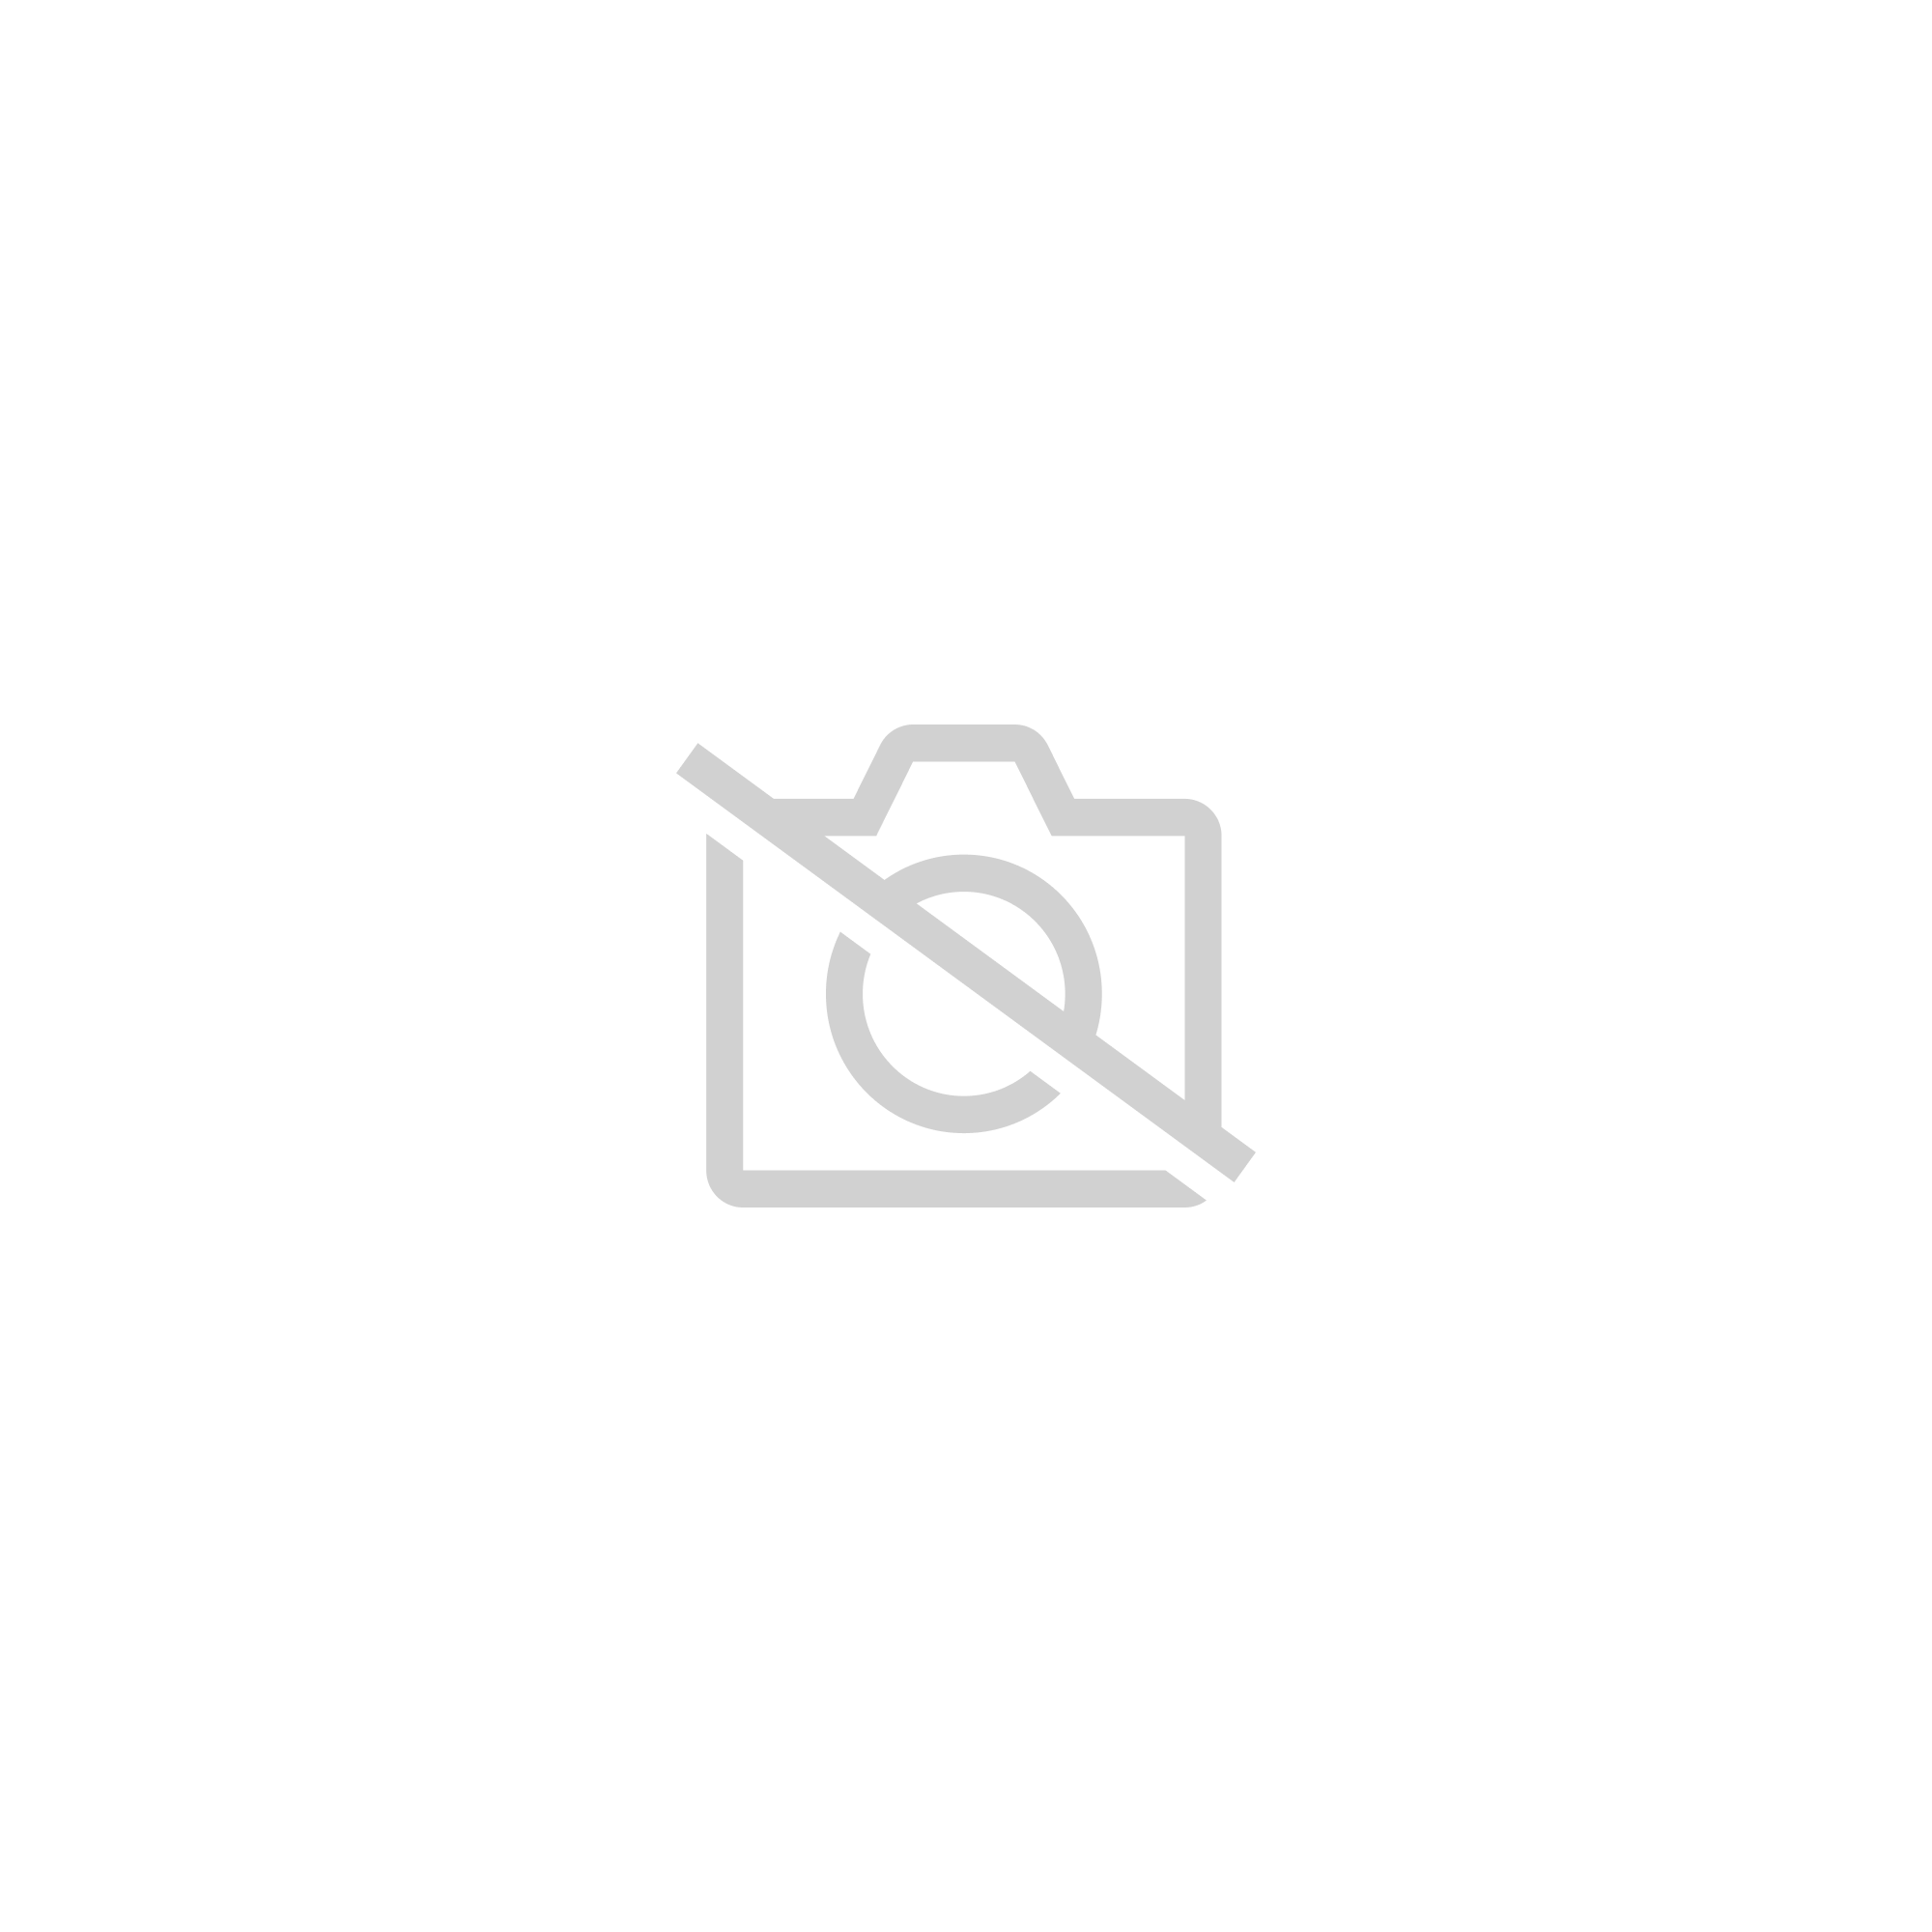 SISHUINIANHUA LBFBRR Vestes Polaires de Patinage Artistique Femme Fille Patinage Survêtement Ensemble de Vêtements Blanc Violet Fuchsia Bleu Ciel Extensible